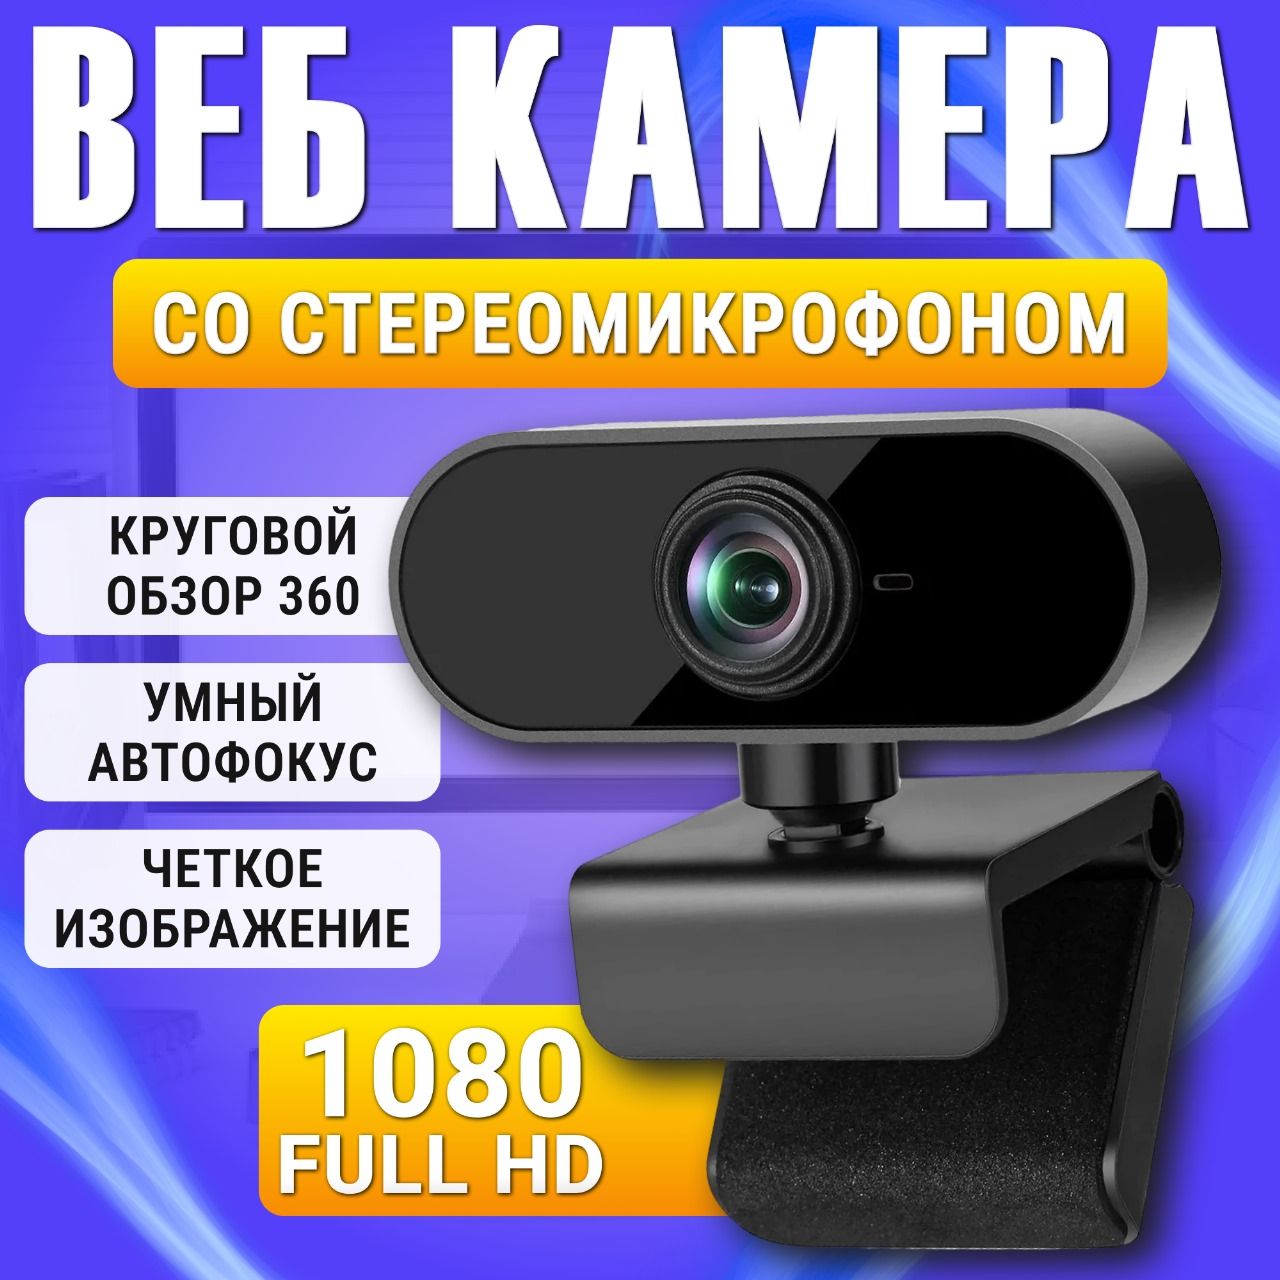 вебкамерадляпксмикрофономusbвебкамеравеб-камерадляноутбукакомпьютера30fps1080PFullHD,встроенныймикрофон